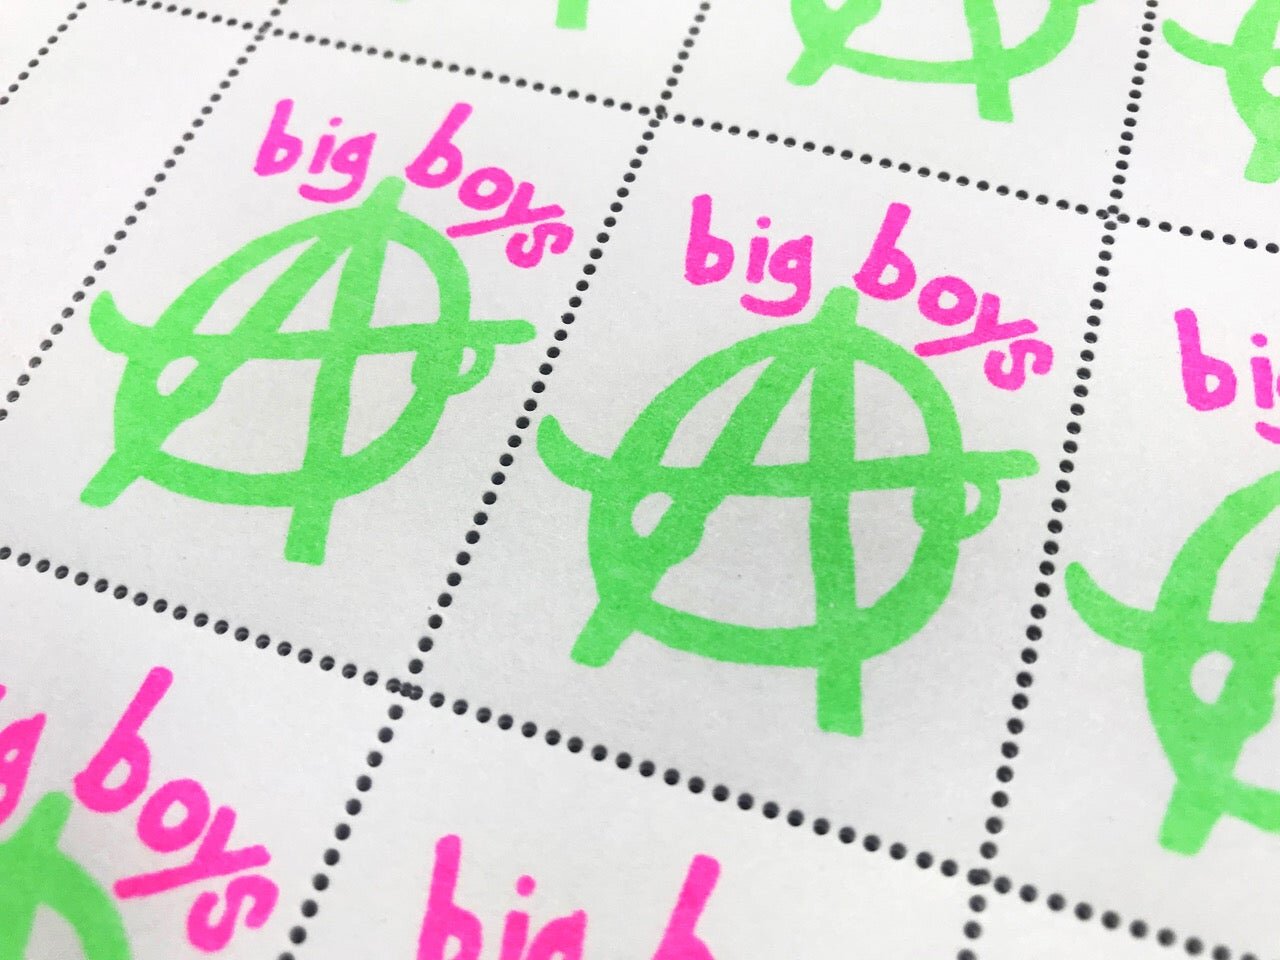 Big Boys Stamp Sheet